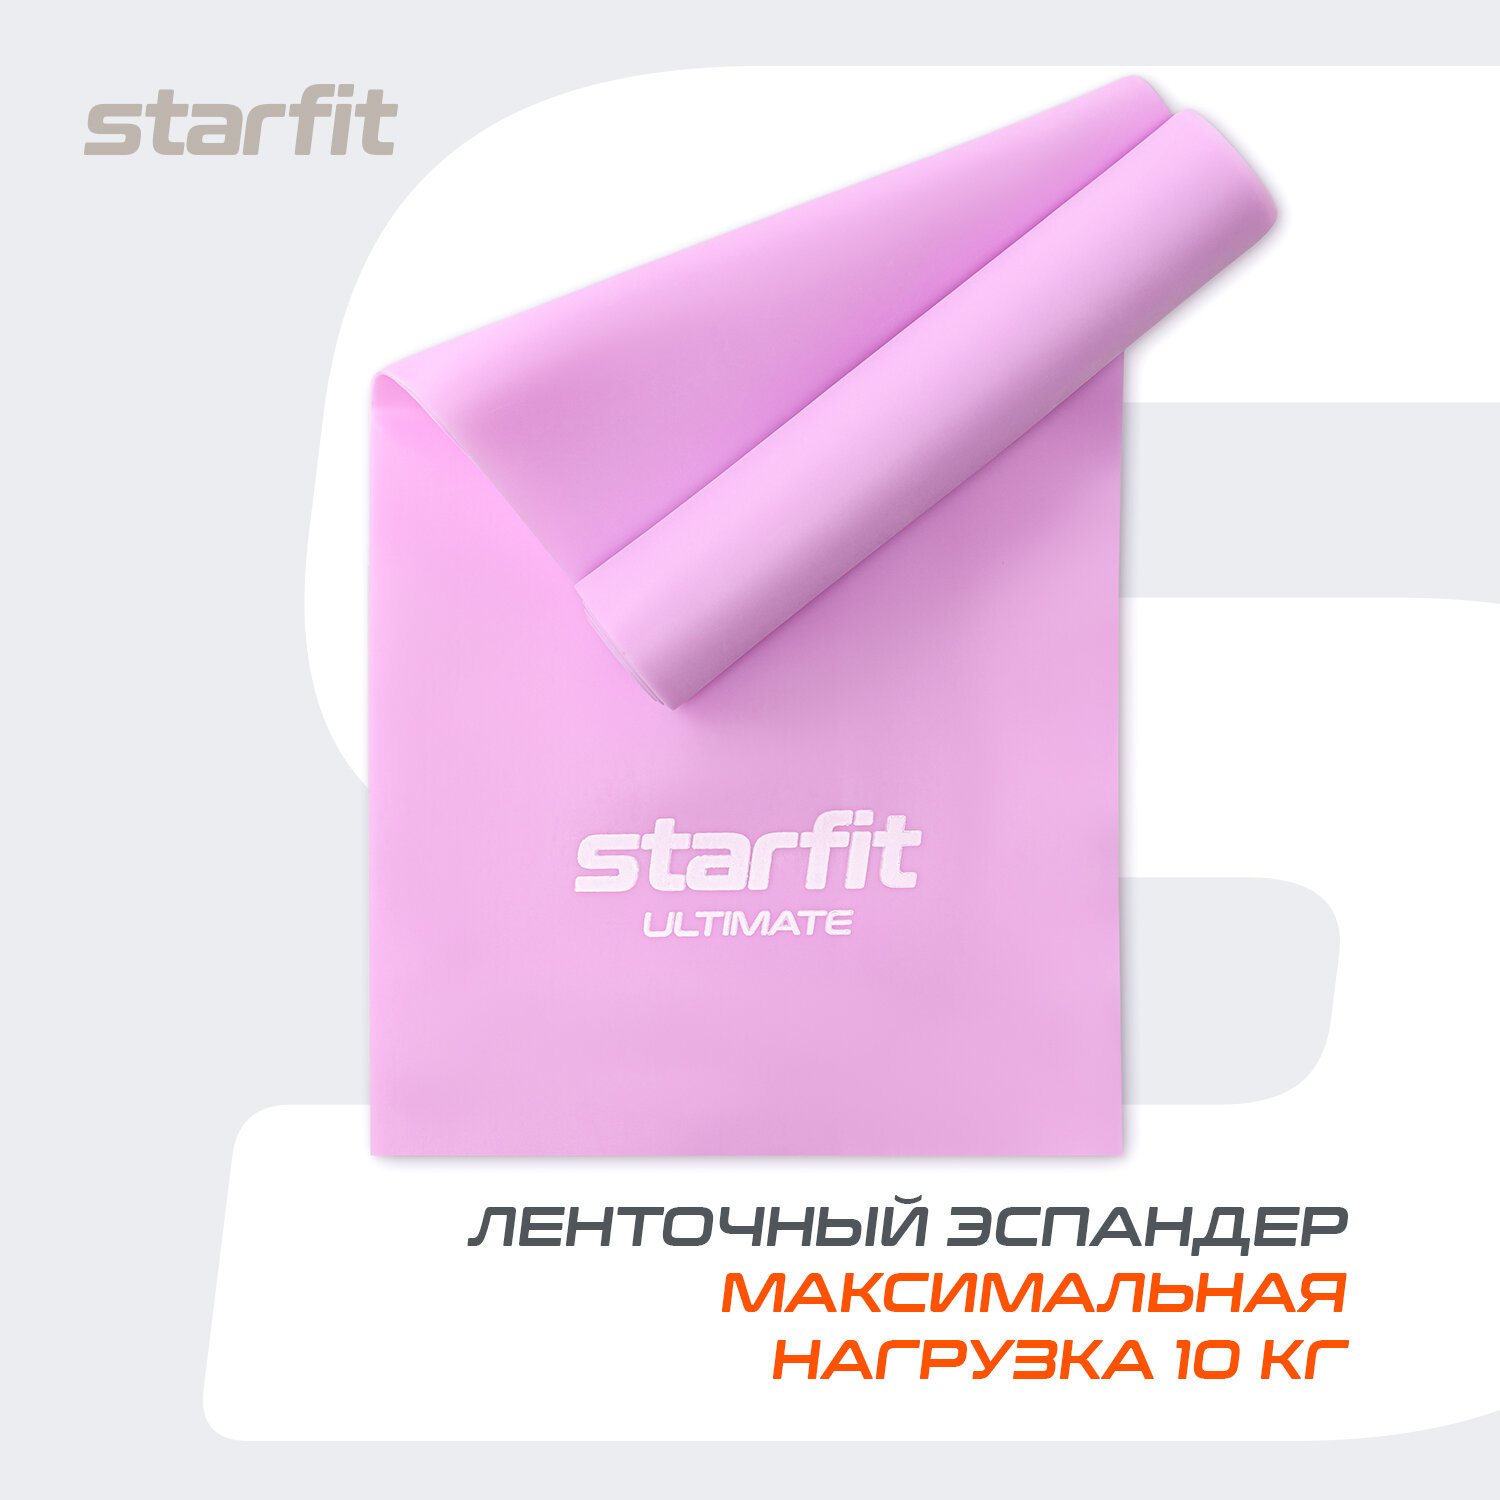 Лента для пилатеса STARFIT ES-201 1200*150*0,65 мм, фиолетовый пастель.